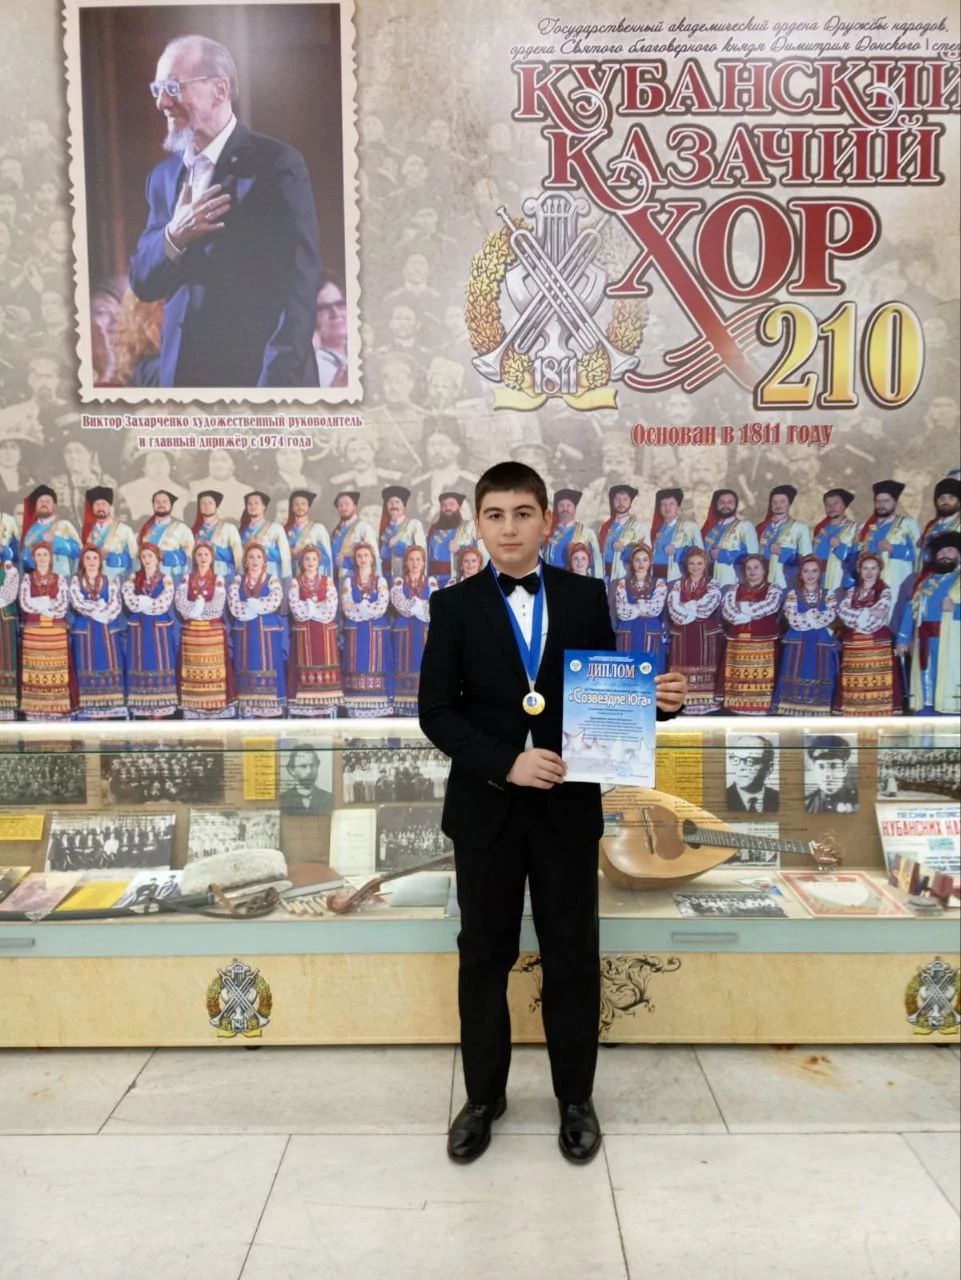 Юный вокалист Ашот Зурнаджян победил в межрегиональном музыкальном конкурсе «Созвездие Юга»